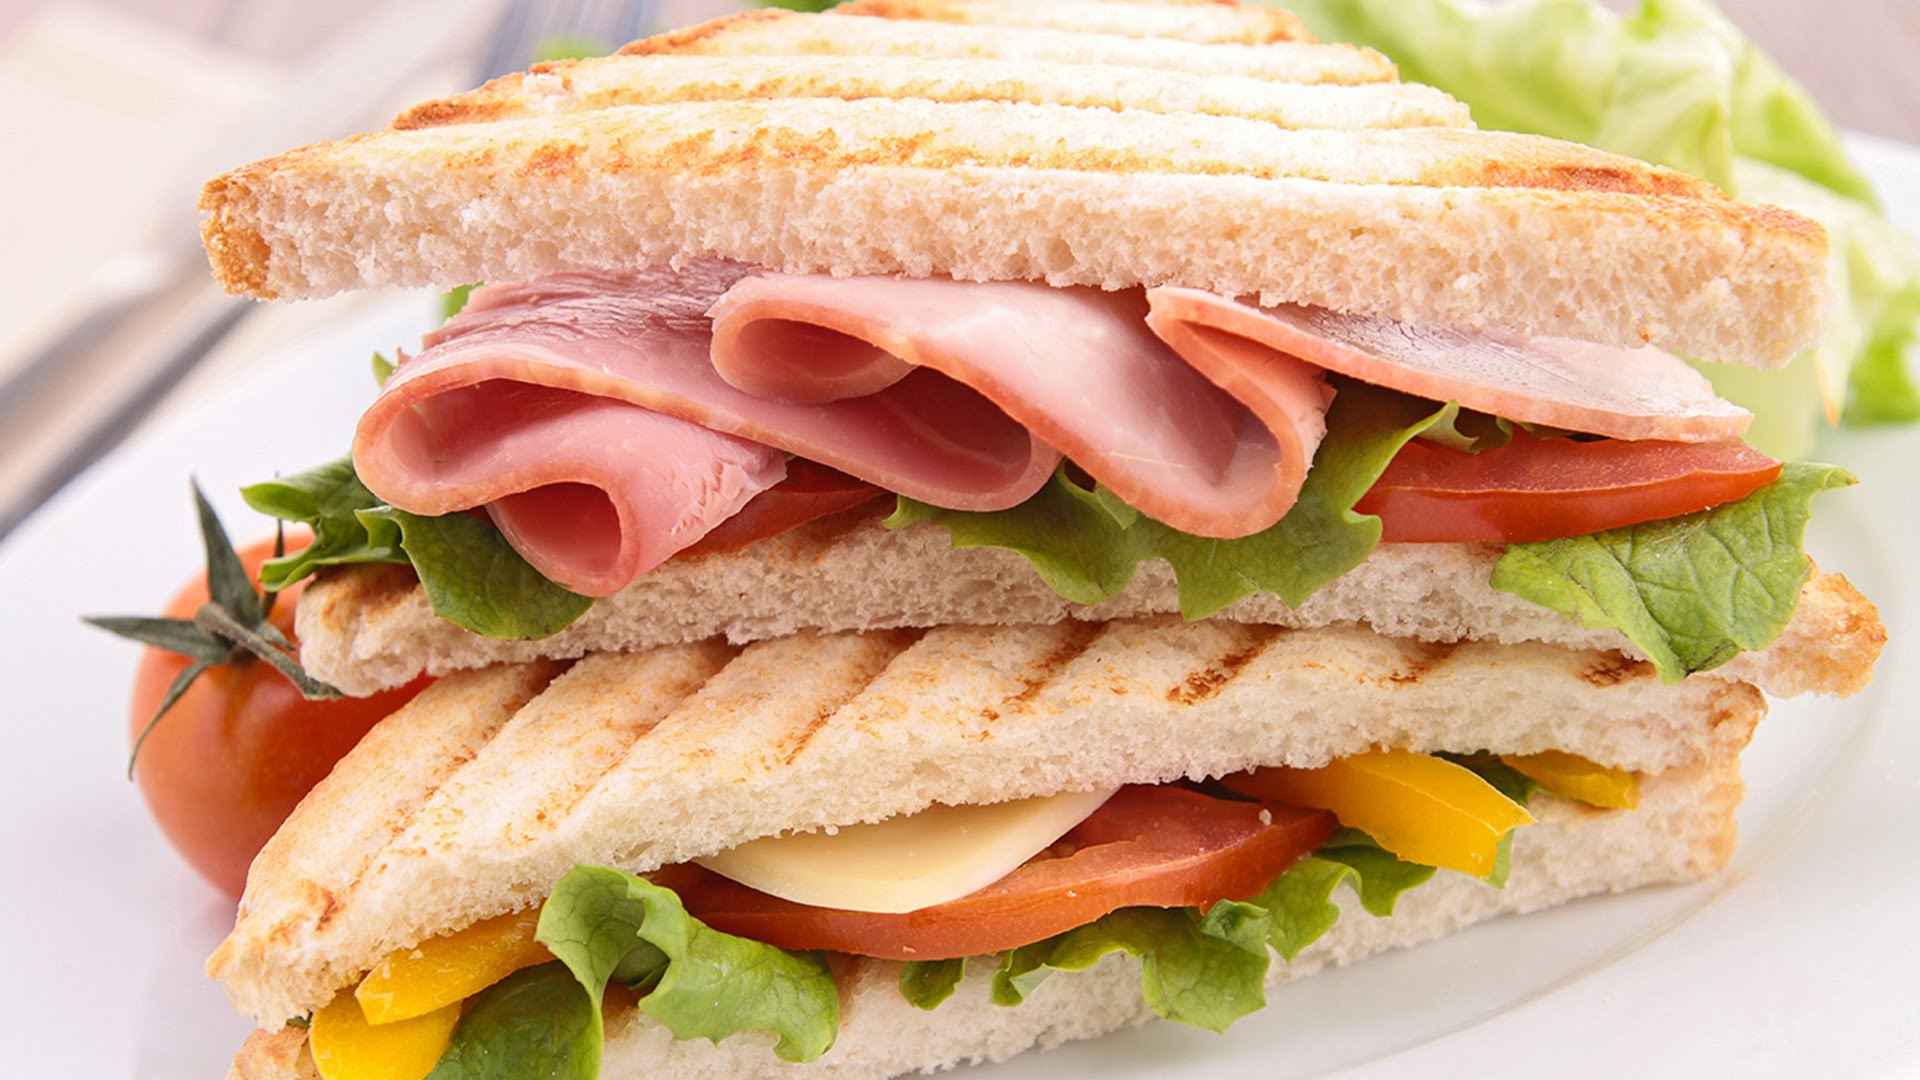 Đồ ăn đi picnic - bánh mì sanwich vừa ngon lại vưa đầy đủ dưỡng chất